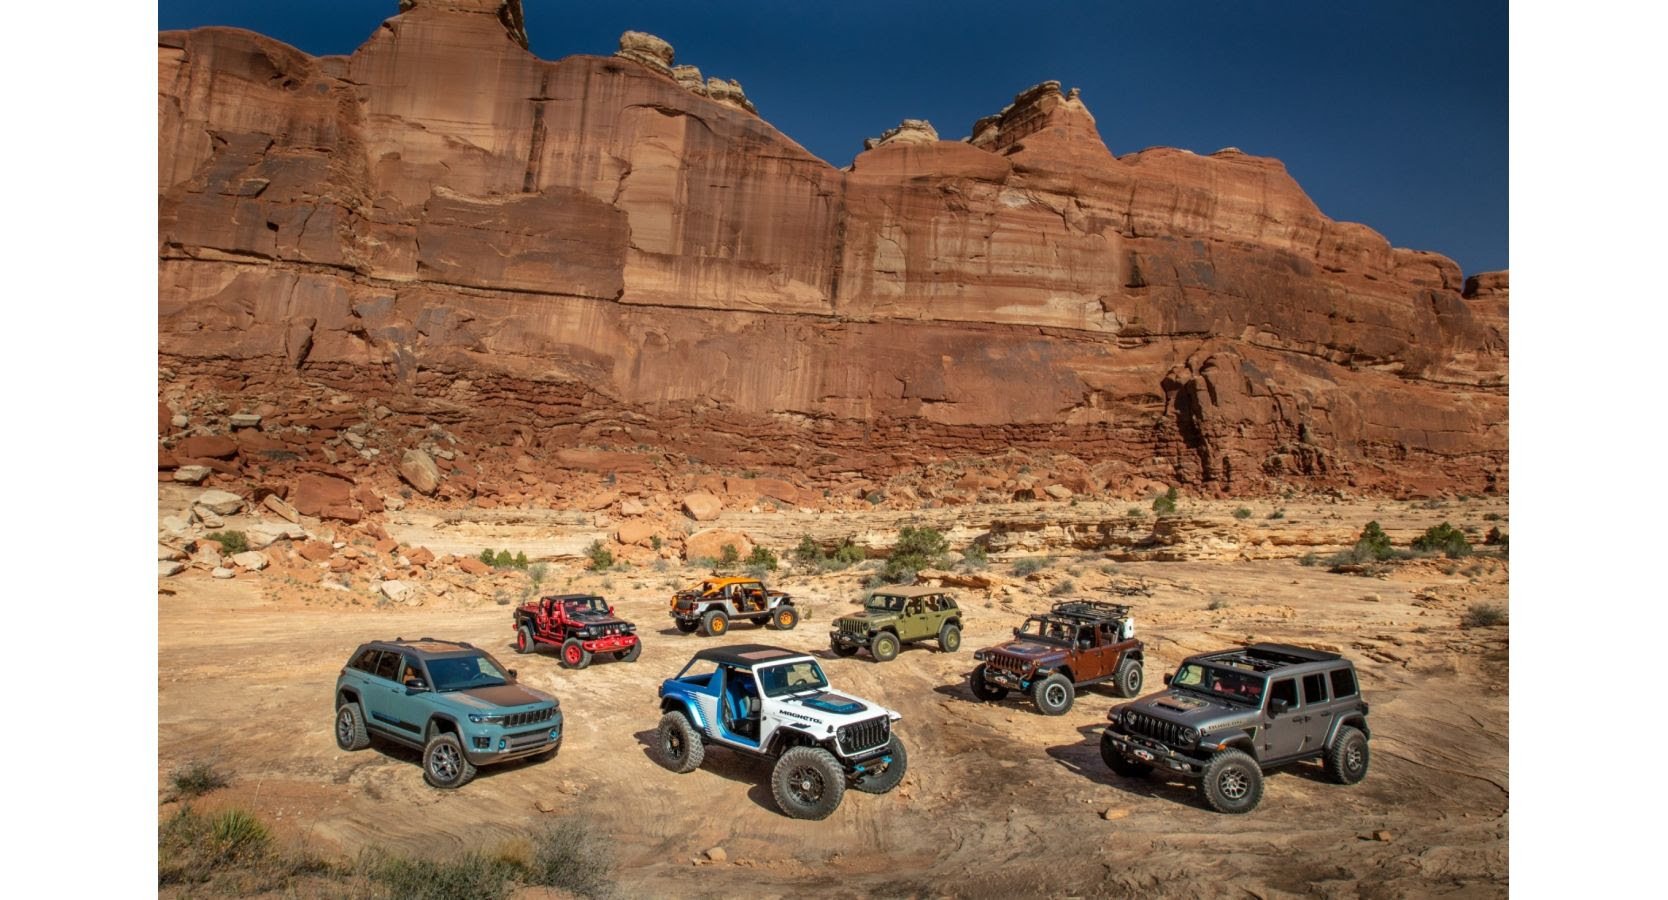 The 56th Annual Moab Easter Jeep Safari